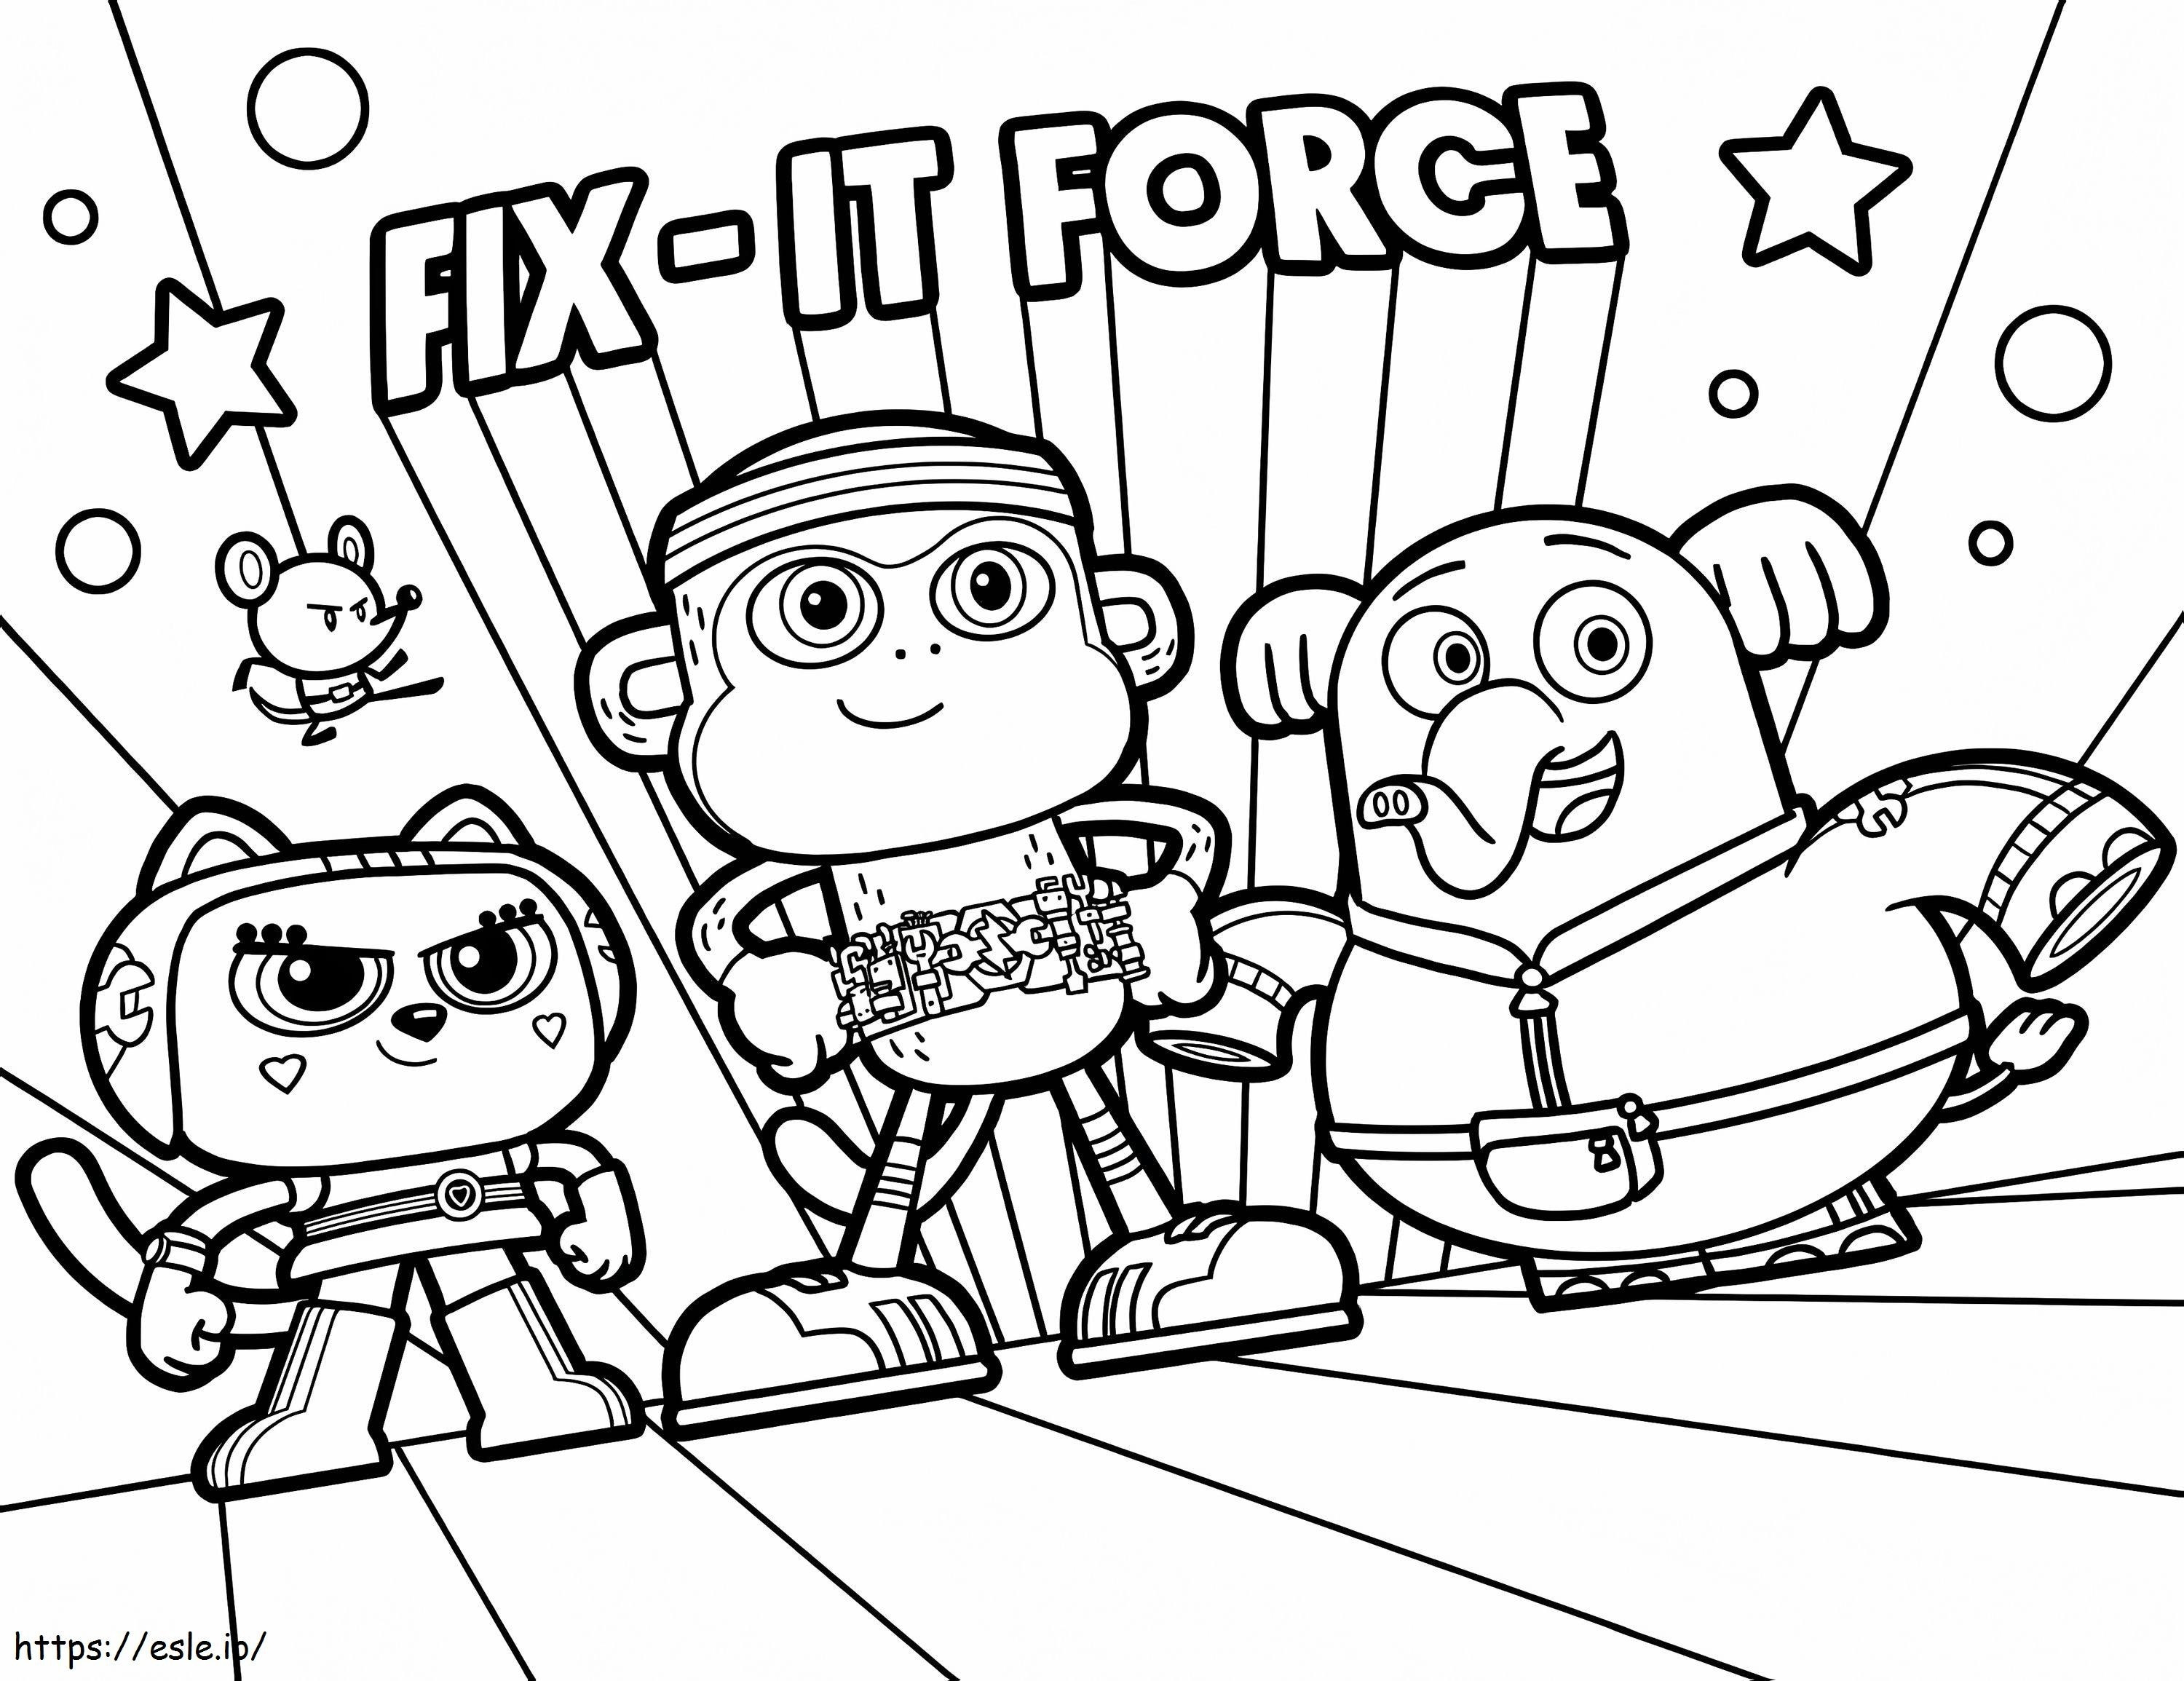 Fix It Force kifestő